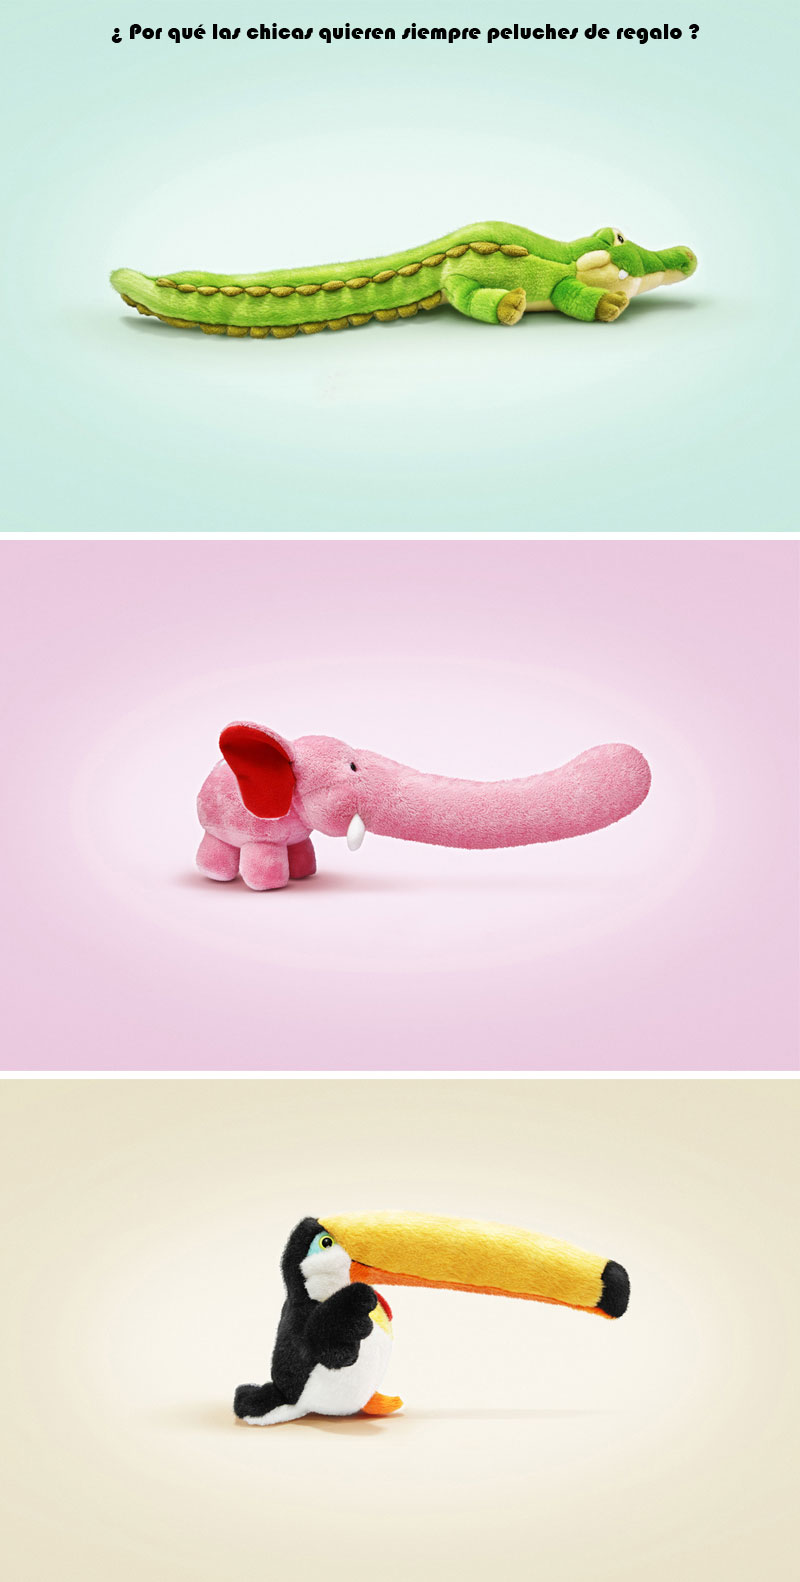 las mejores imagenes sobre sexo y humor